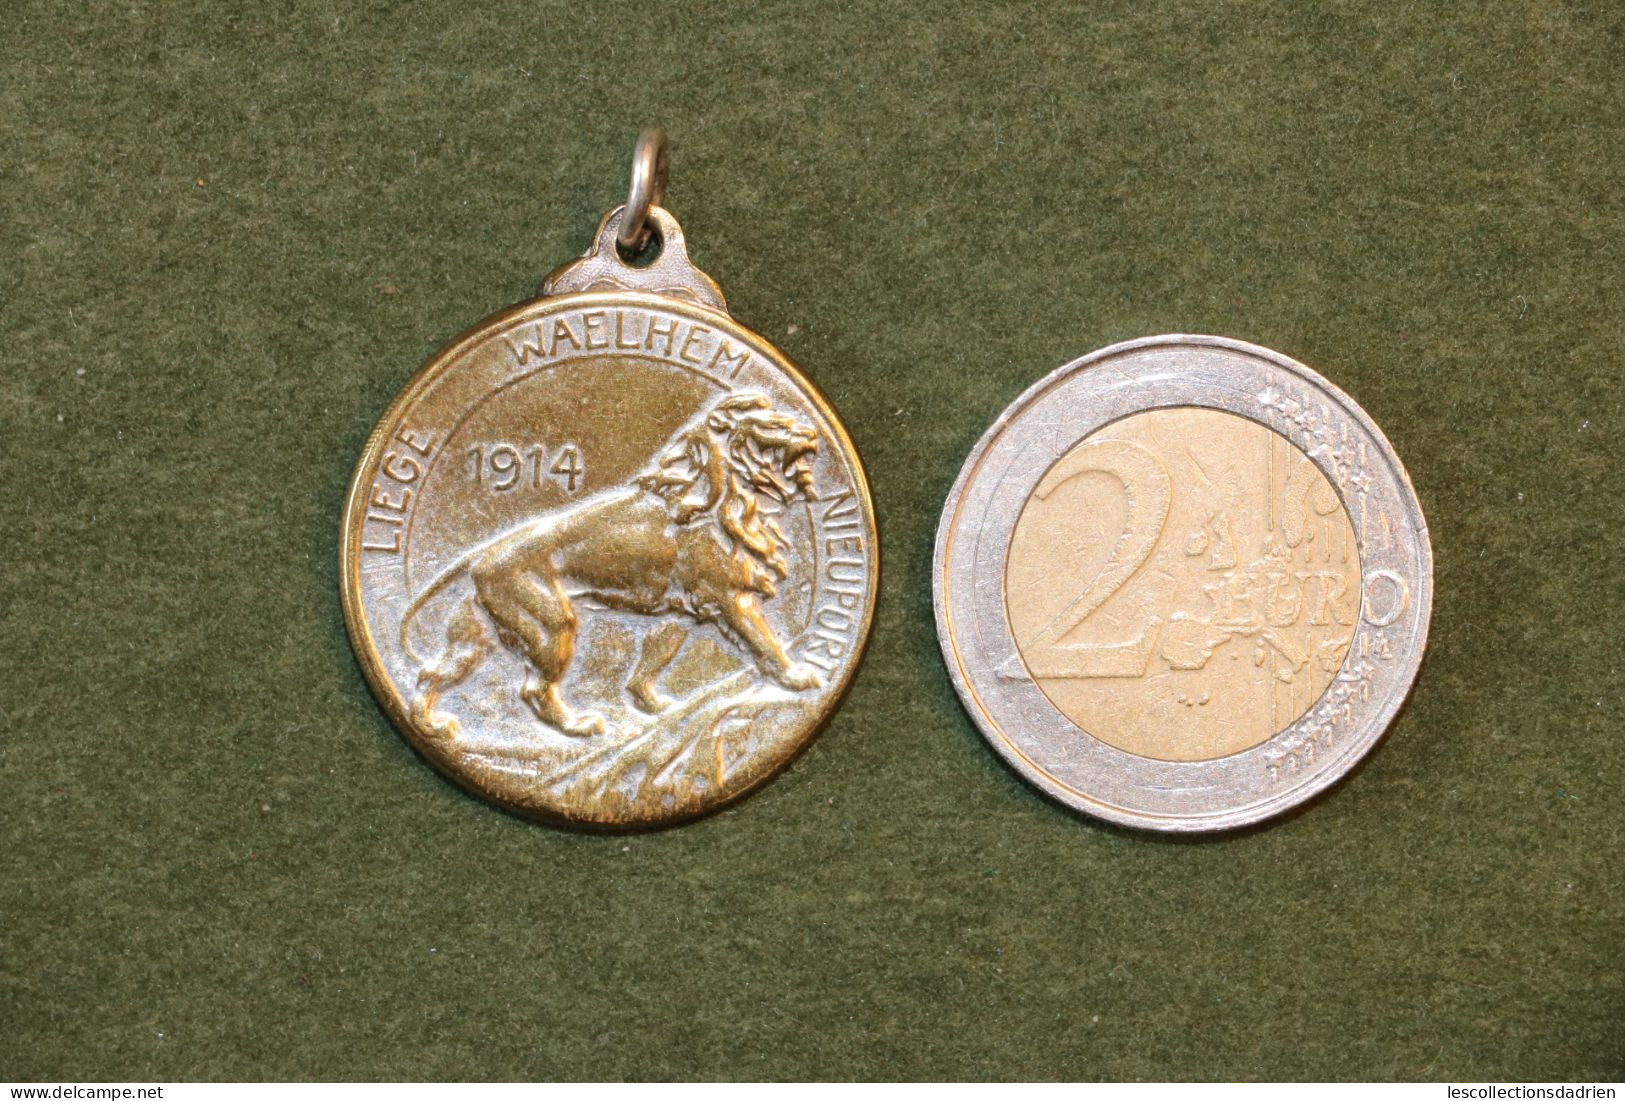 Médaille Belge Liège Waelhem Nieuport Guerre 14-18 - Belgian Medal WWI Médaillette Journée - Belgium